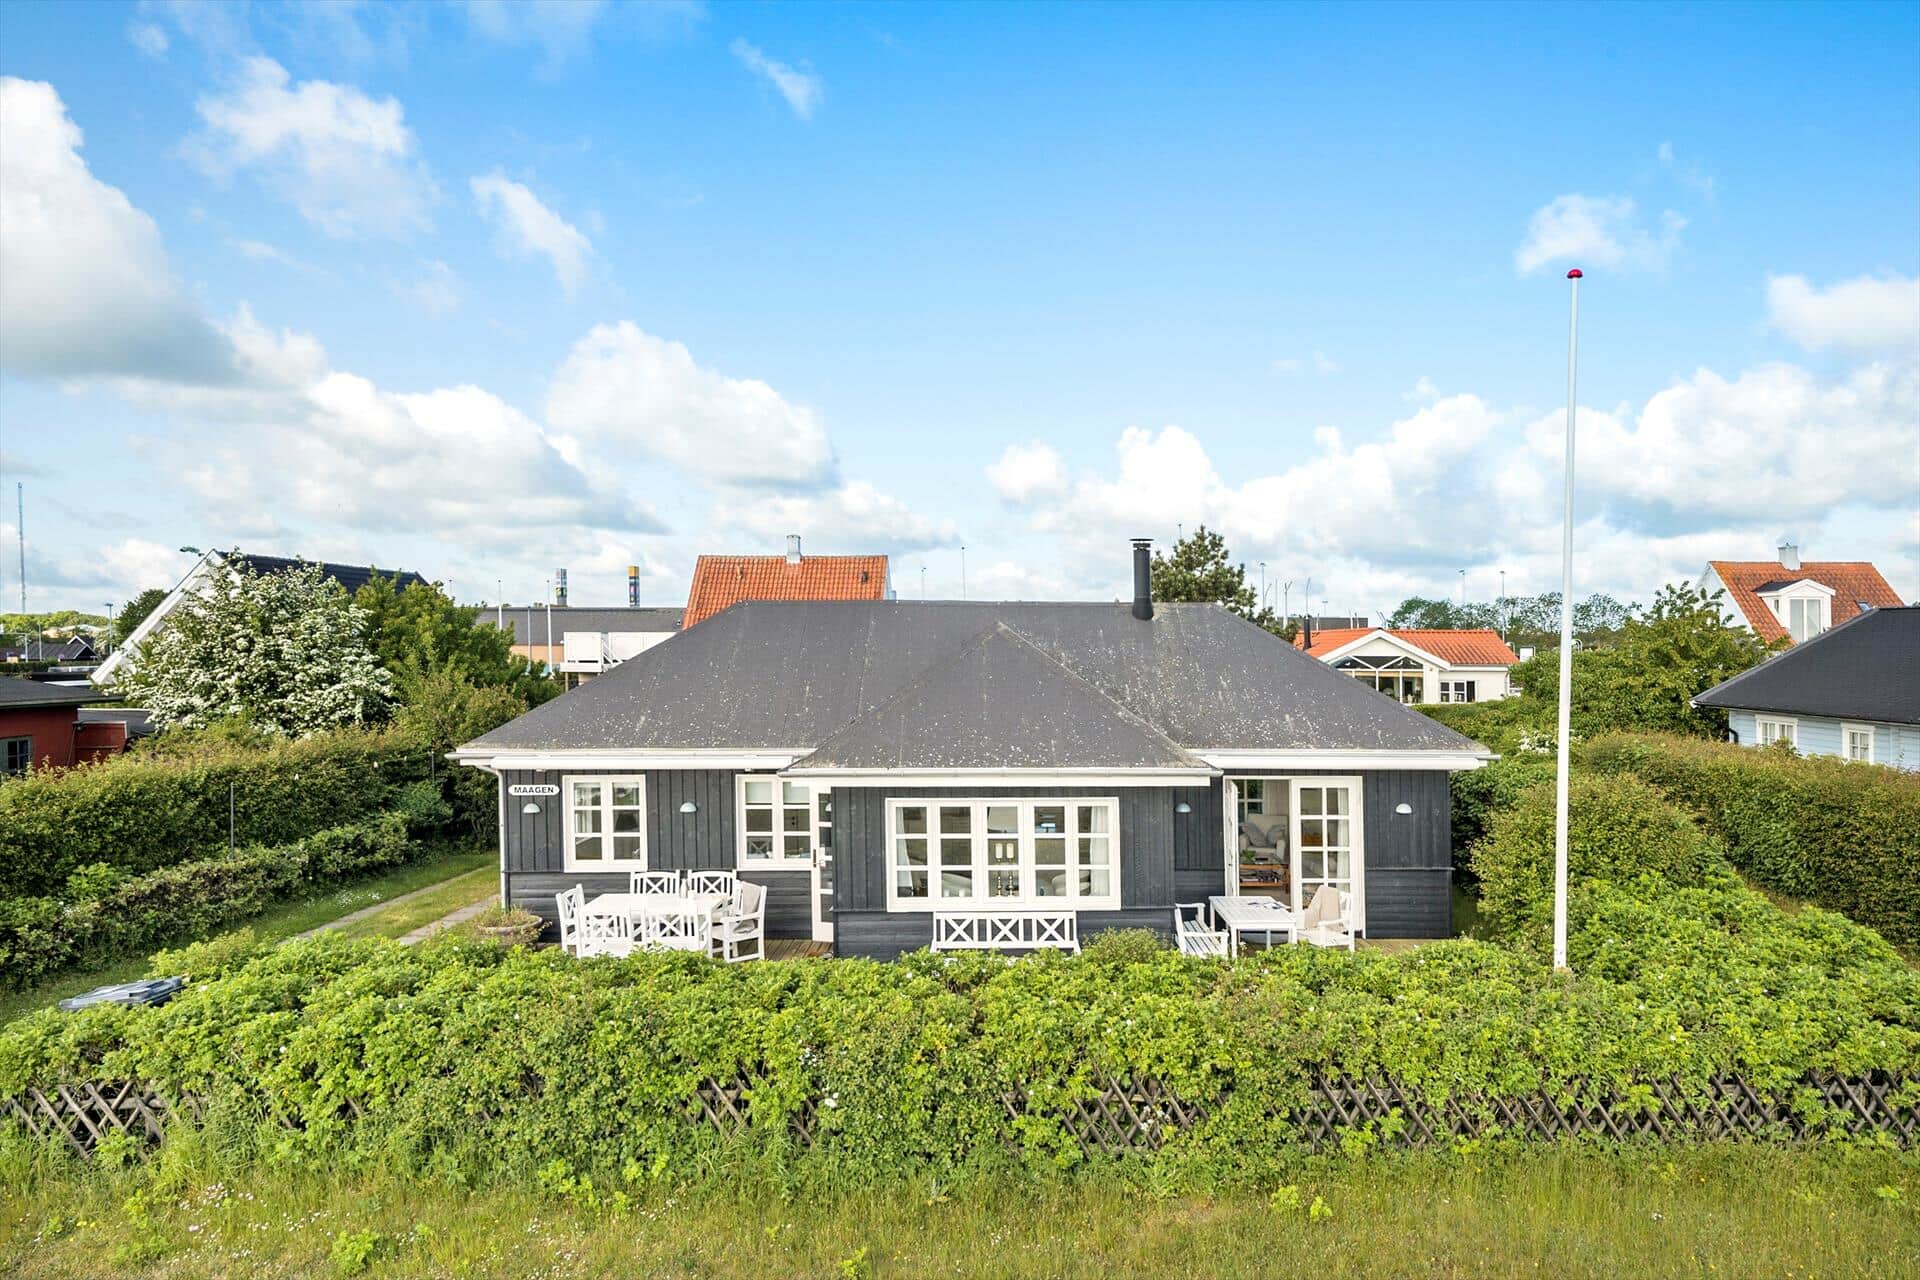 Image 2-3 Holiday-home M66252, Østerø Strandvej 12, DK - 5800 Nyborg